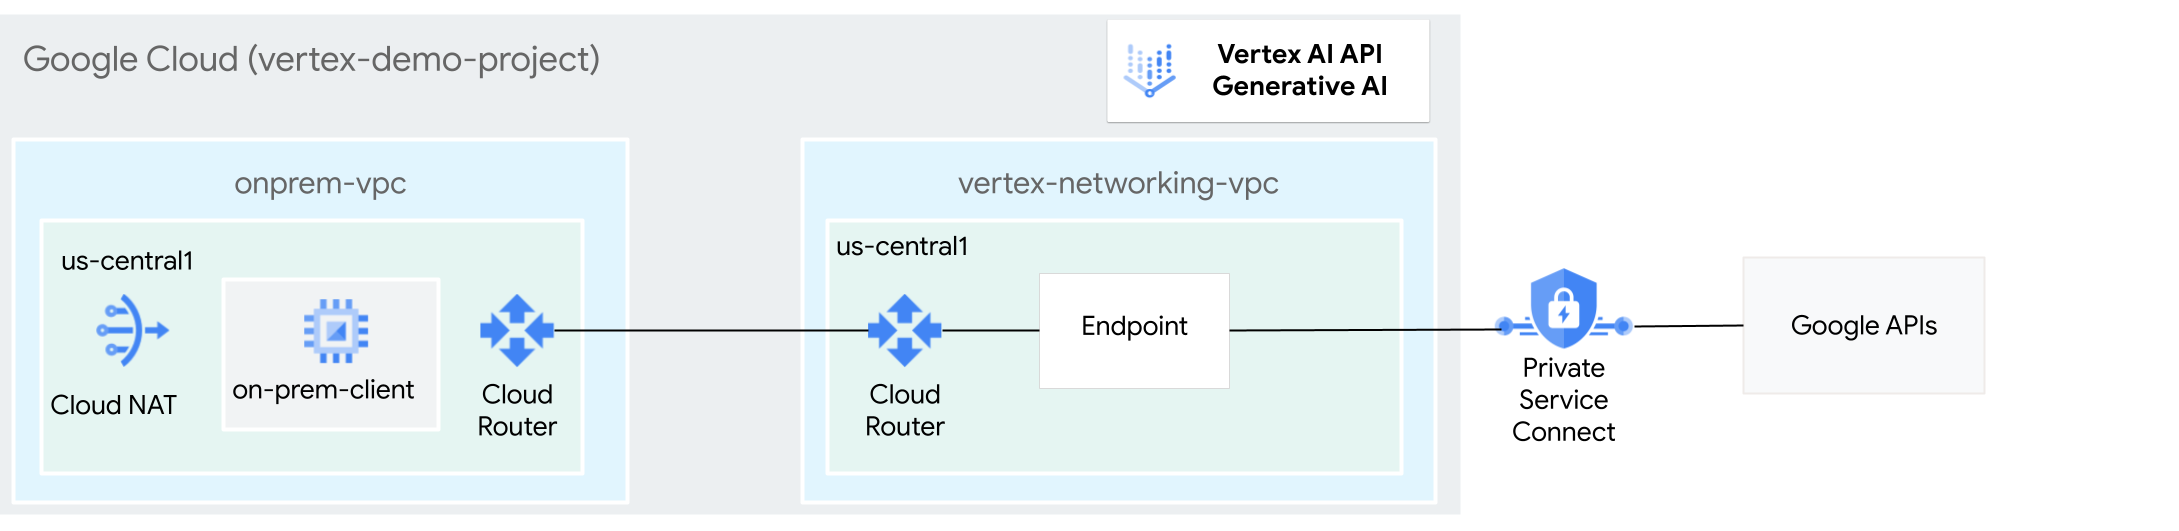 Diagramme d'architecture de Private Service Connect pour accéder à l'IA générative sur Vertex AI.